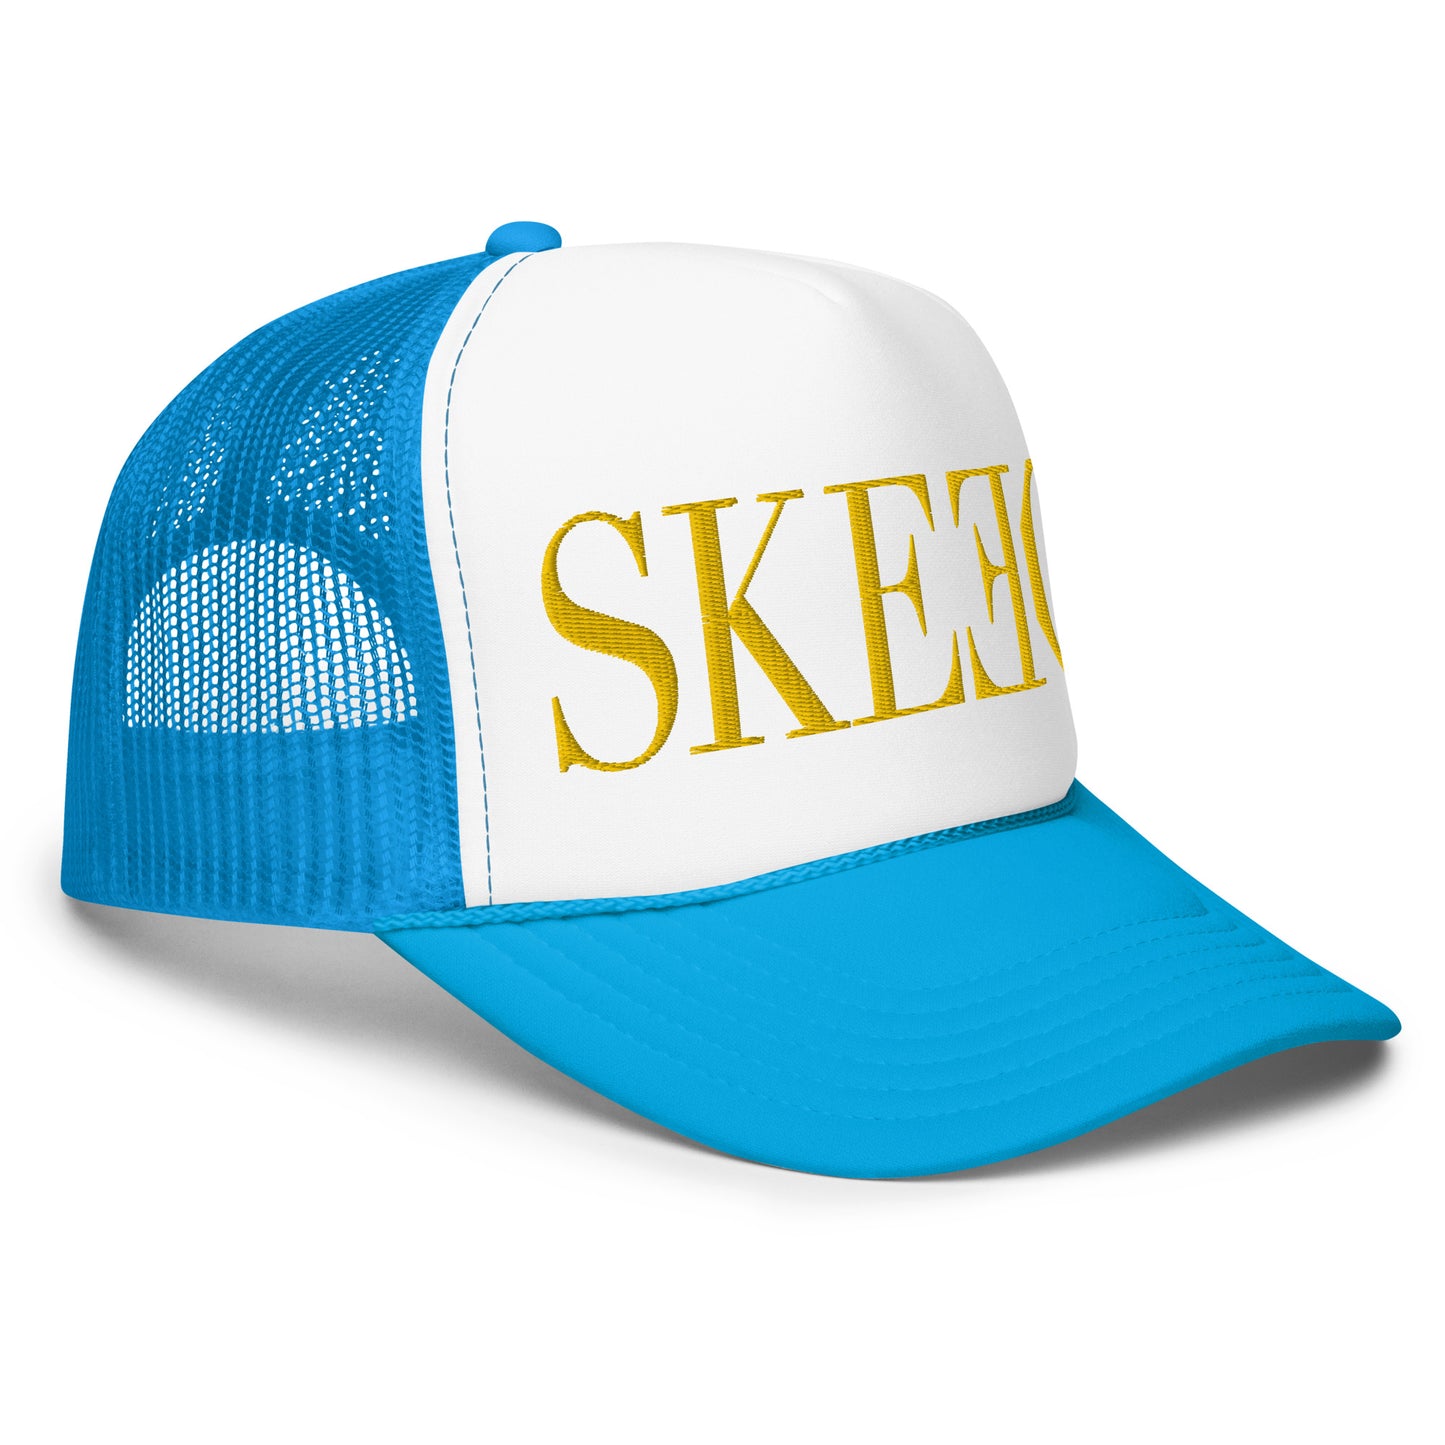 SK trucker hat